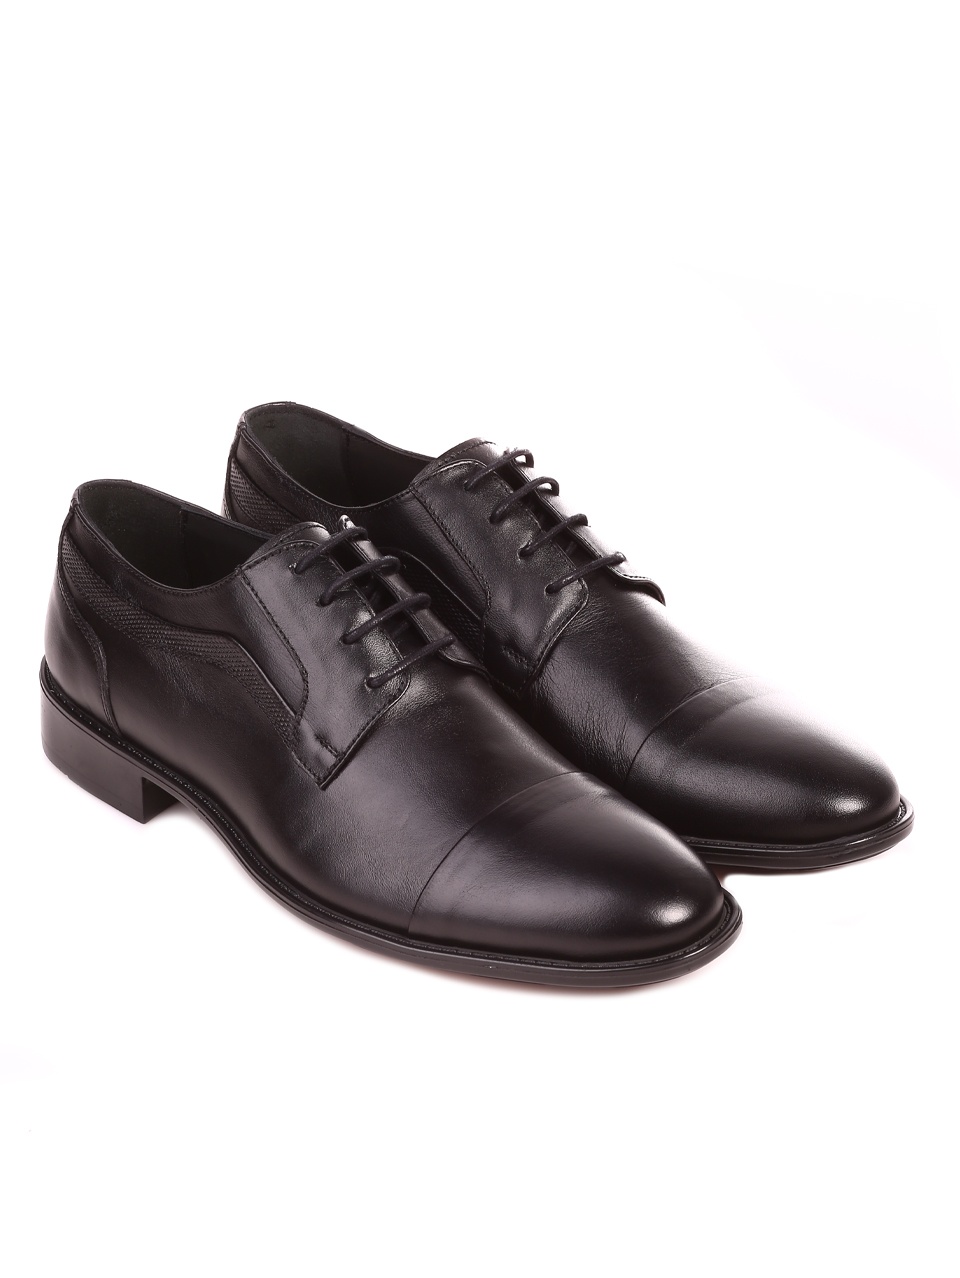 Eлегантни мъжки обувки от естесвен кожа 153-5847 black S